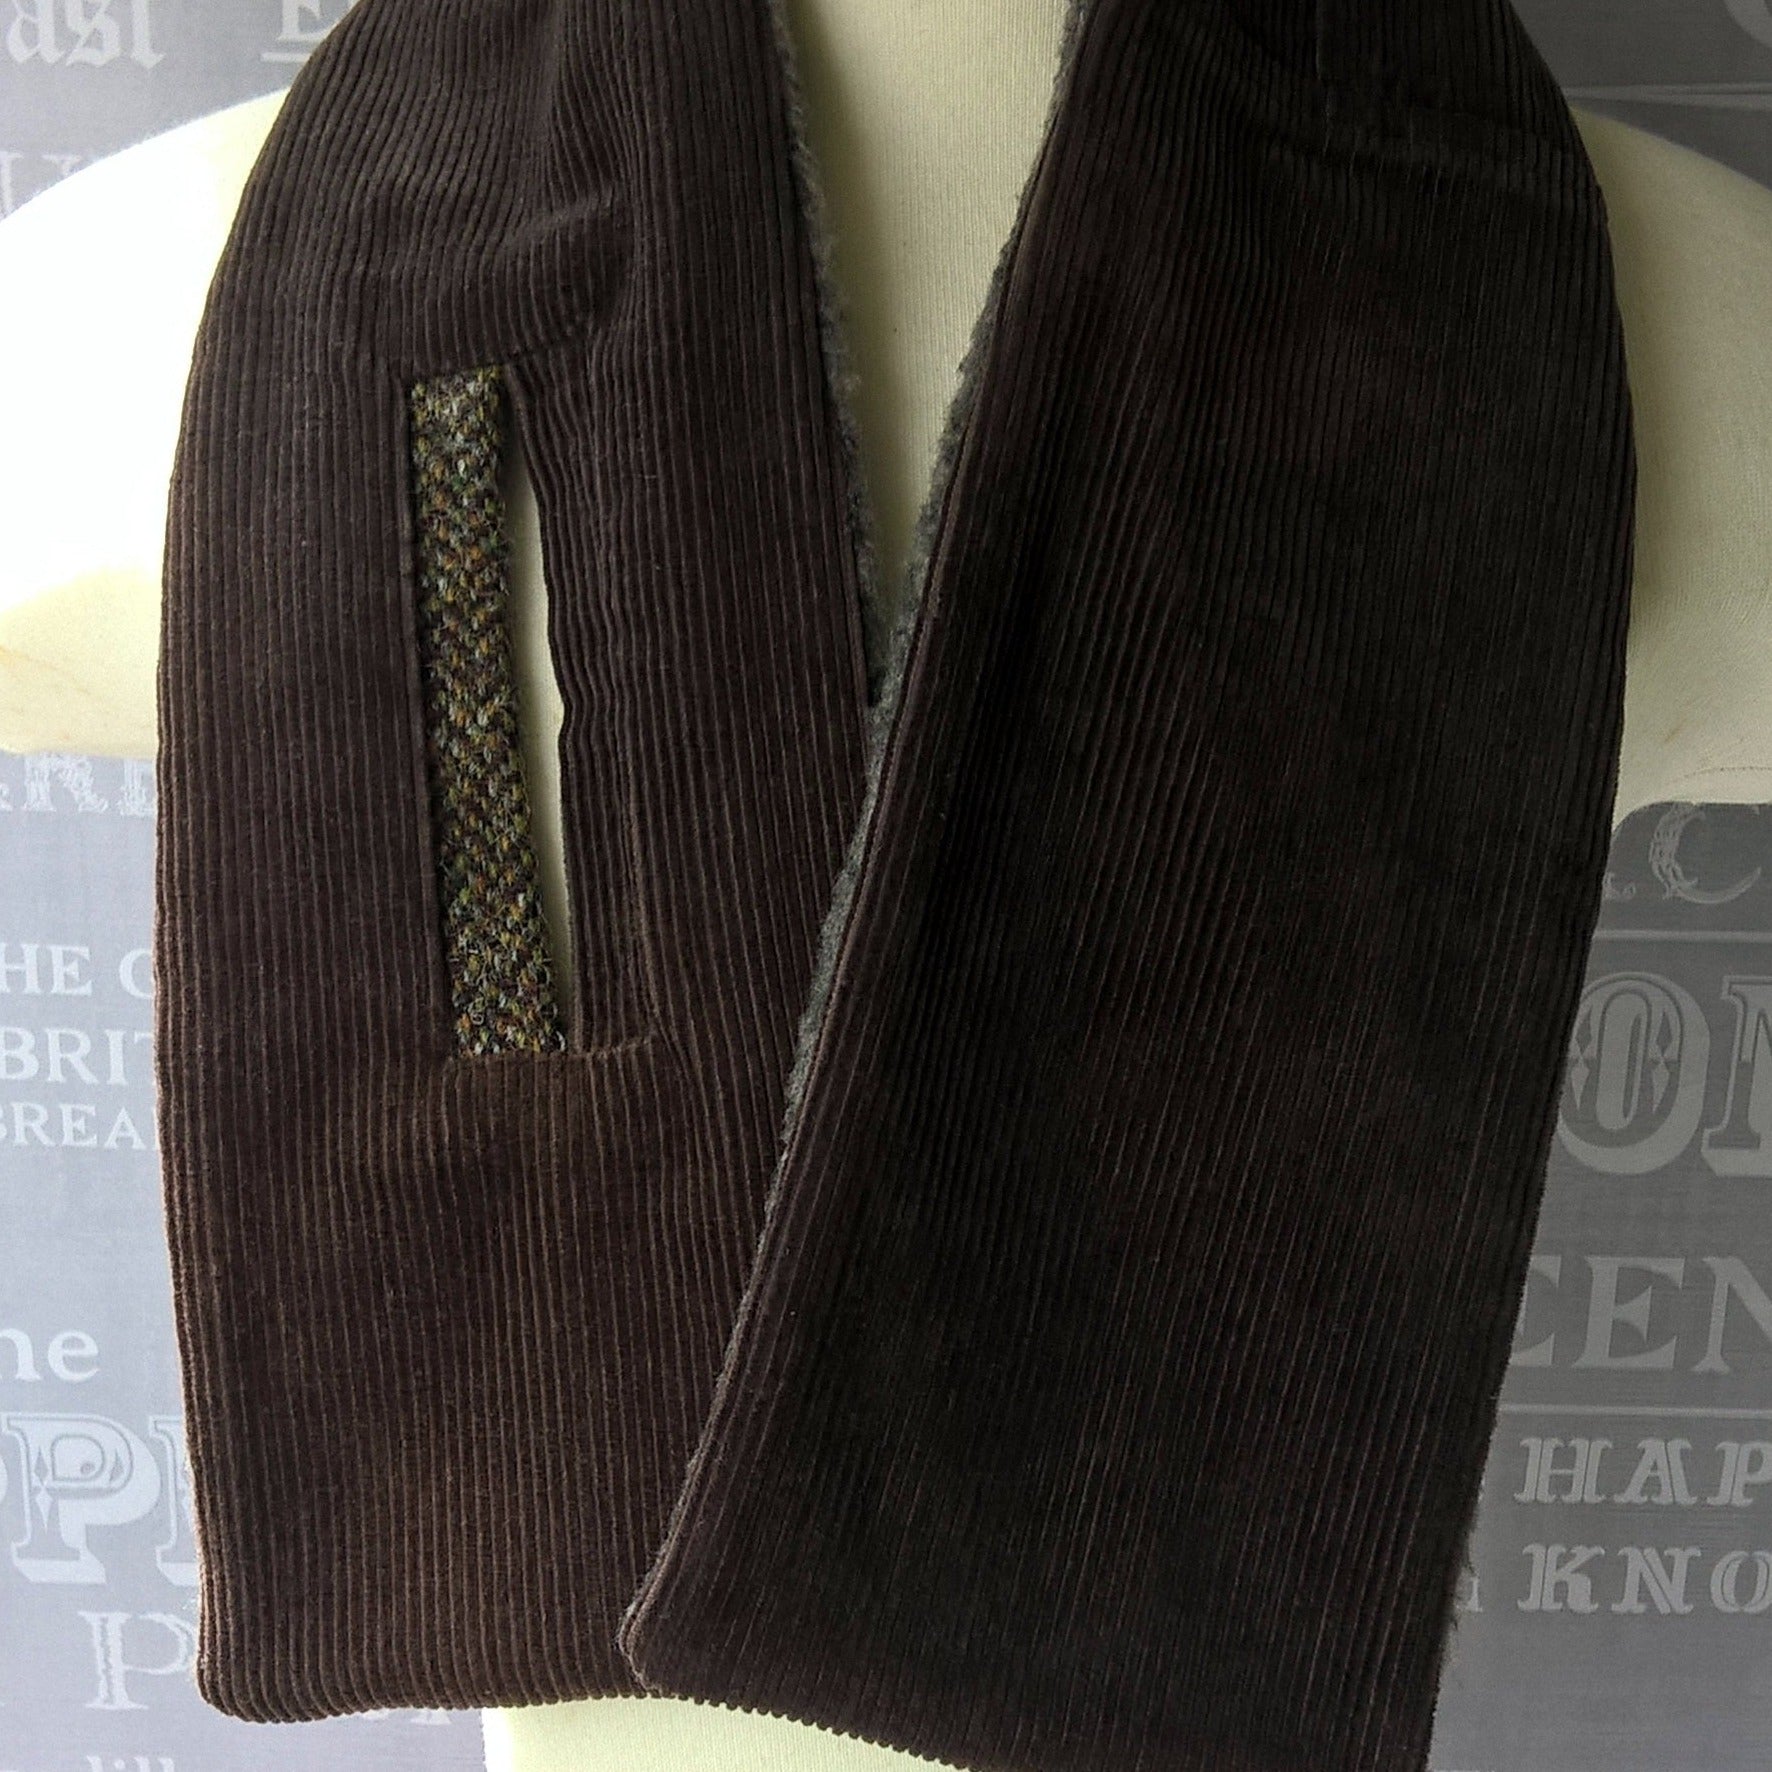 Brown corduroy and fleece cravat with harris tweed trim